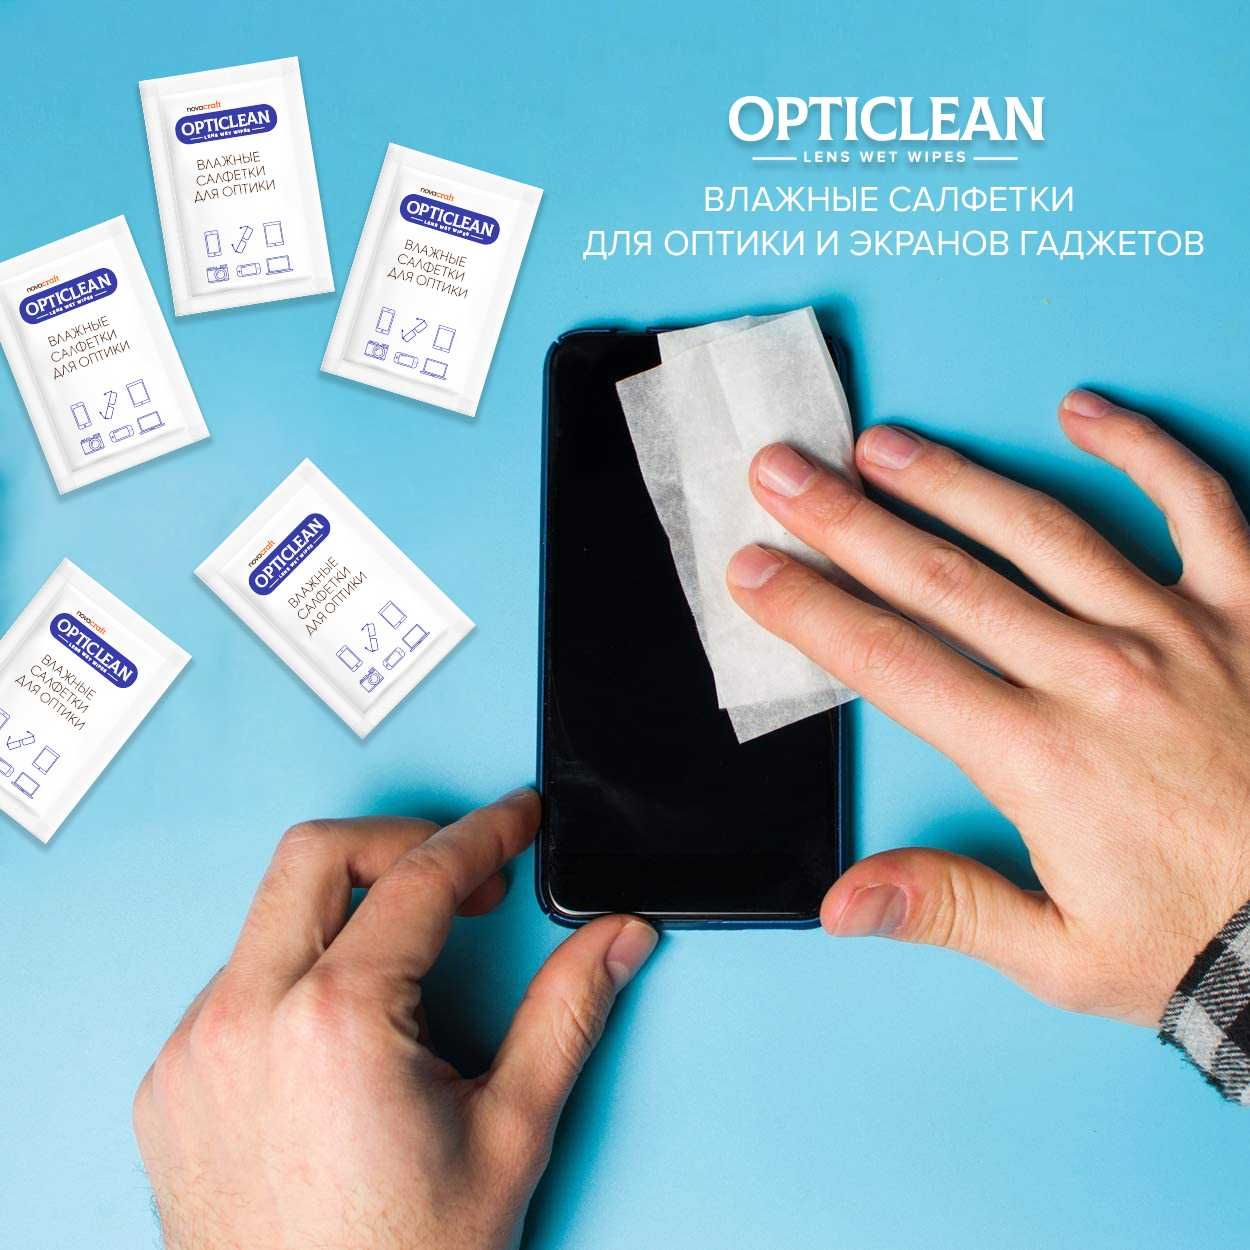 OPTICLEAN - Специальные салфетки для оптики и гаджетов (оптом)